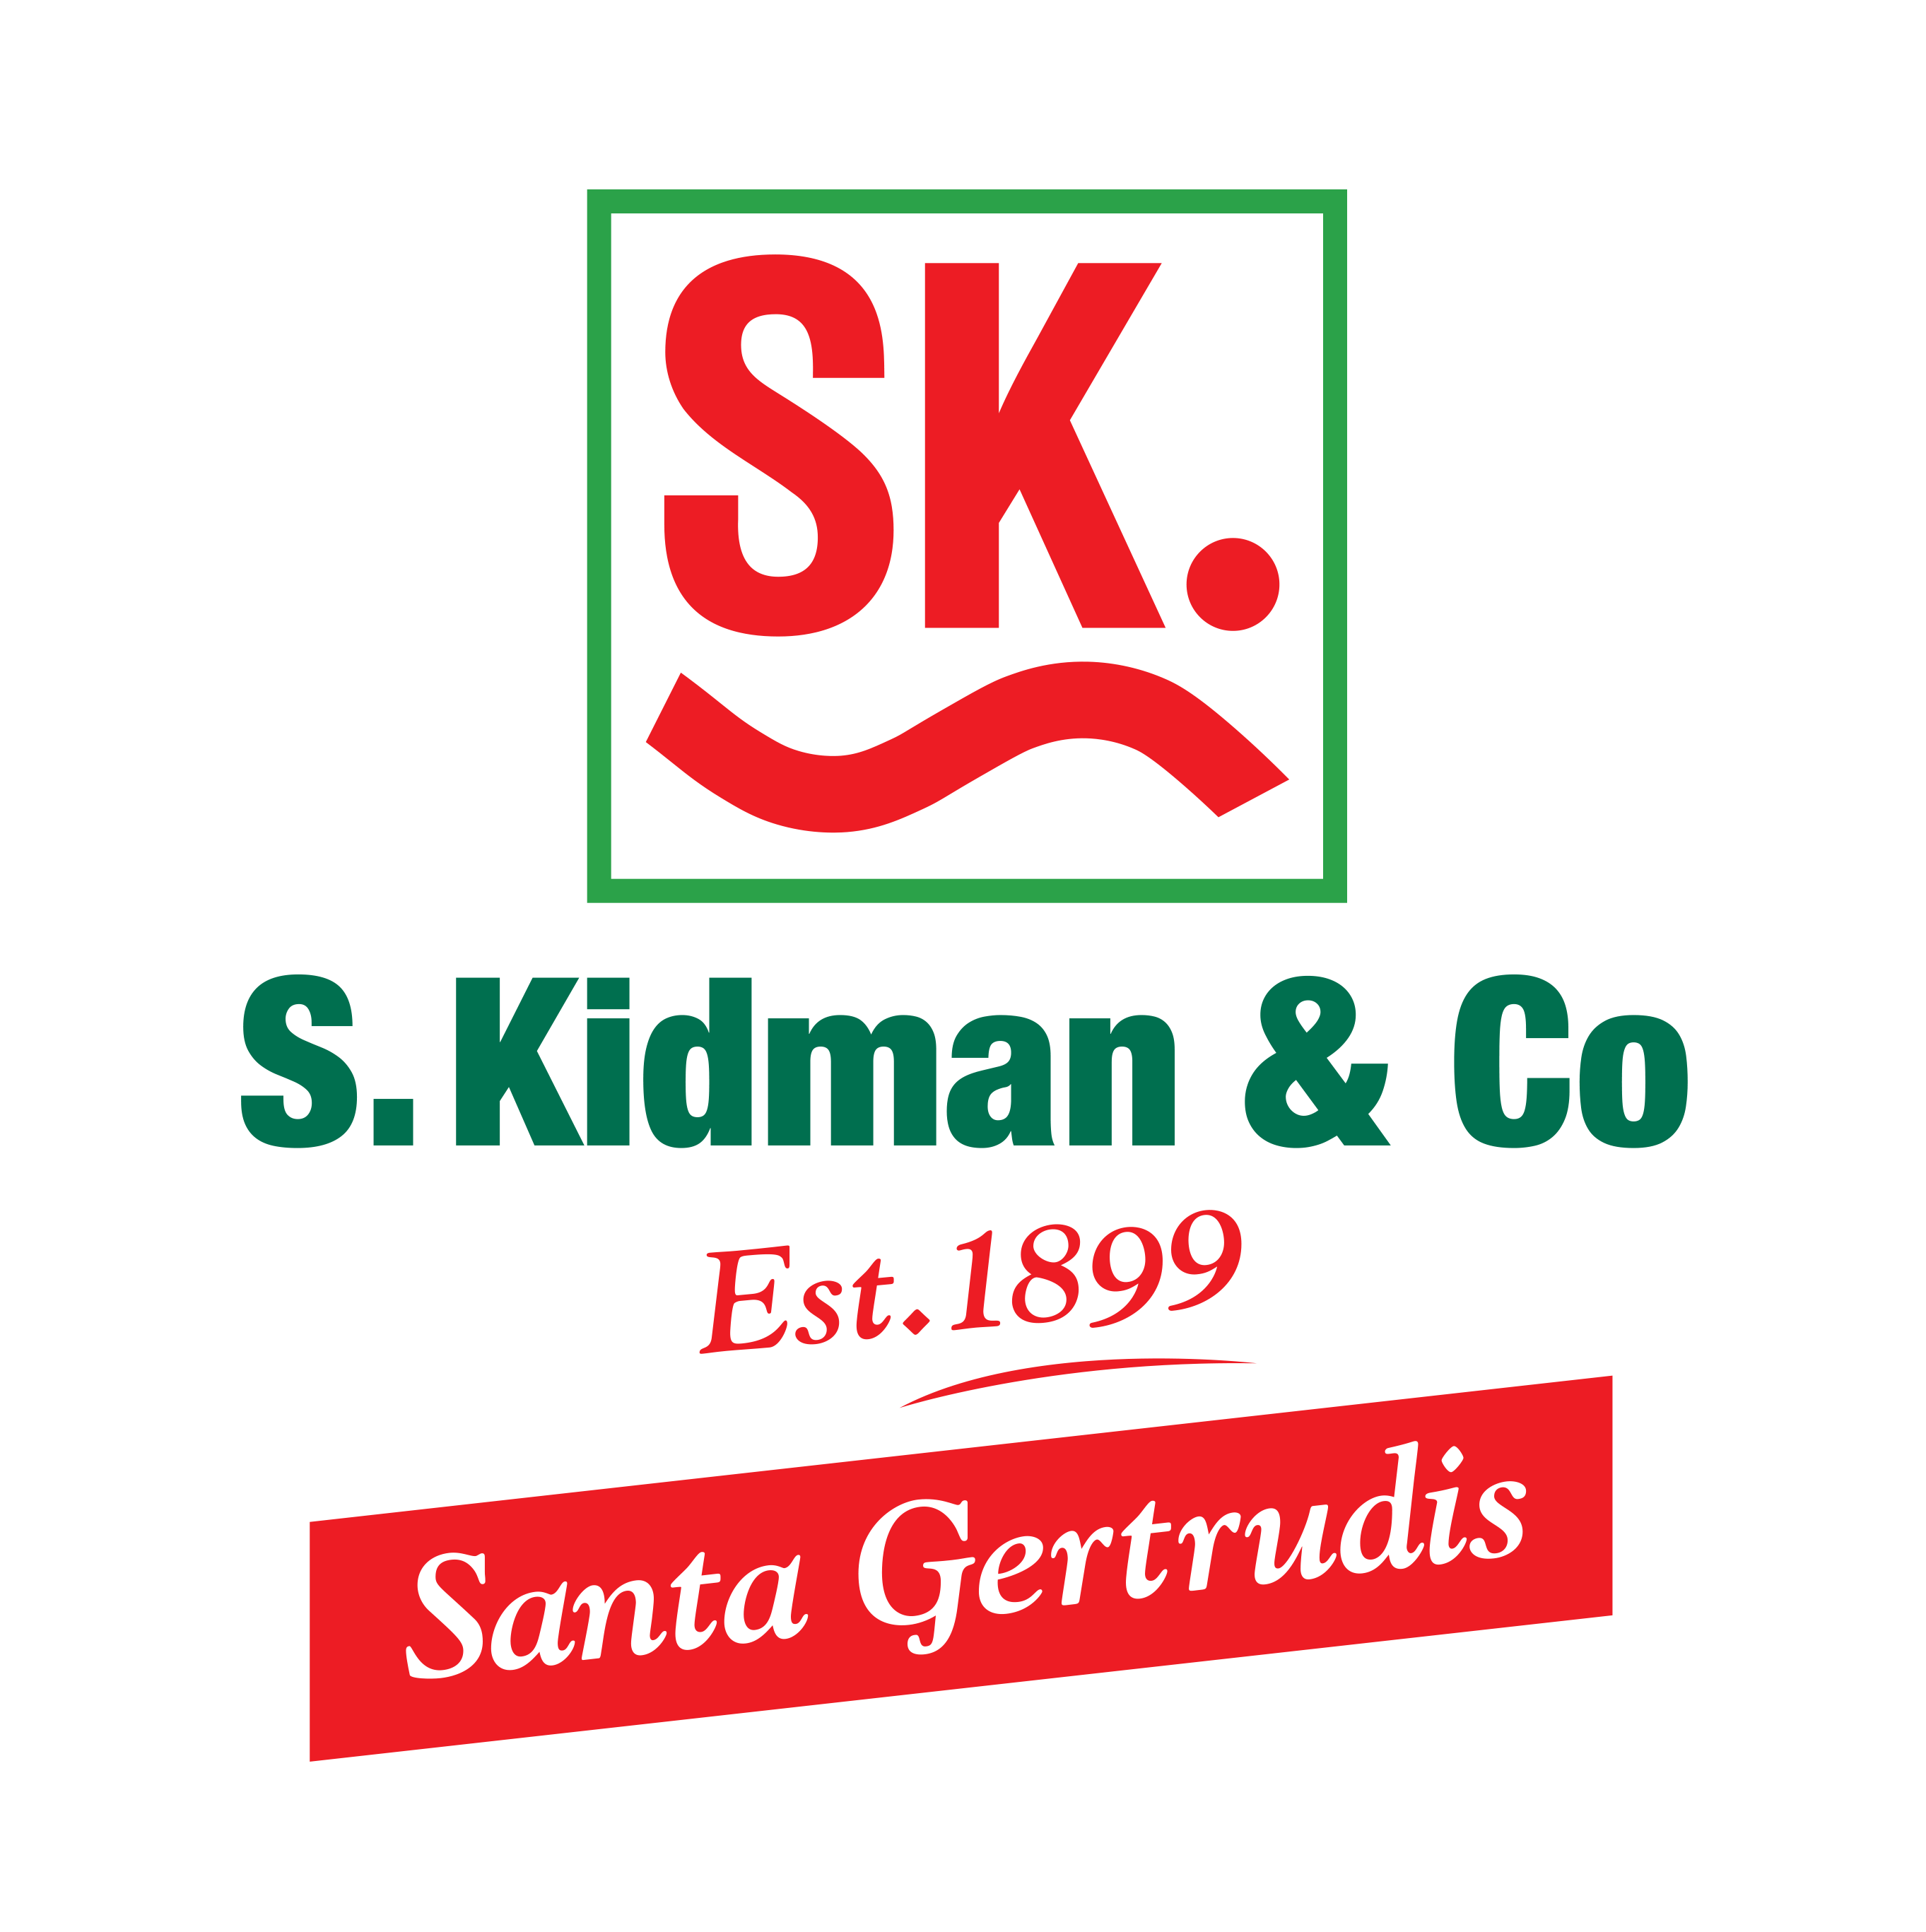 S Kidman & Co